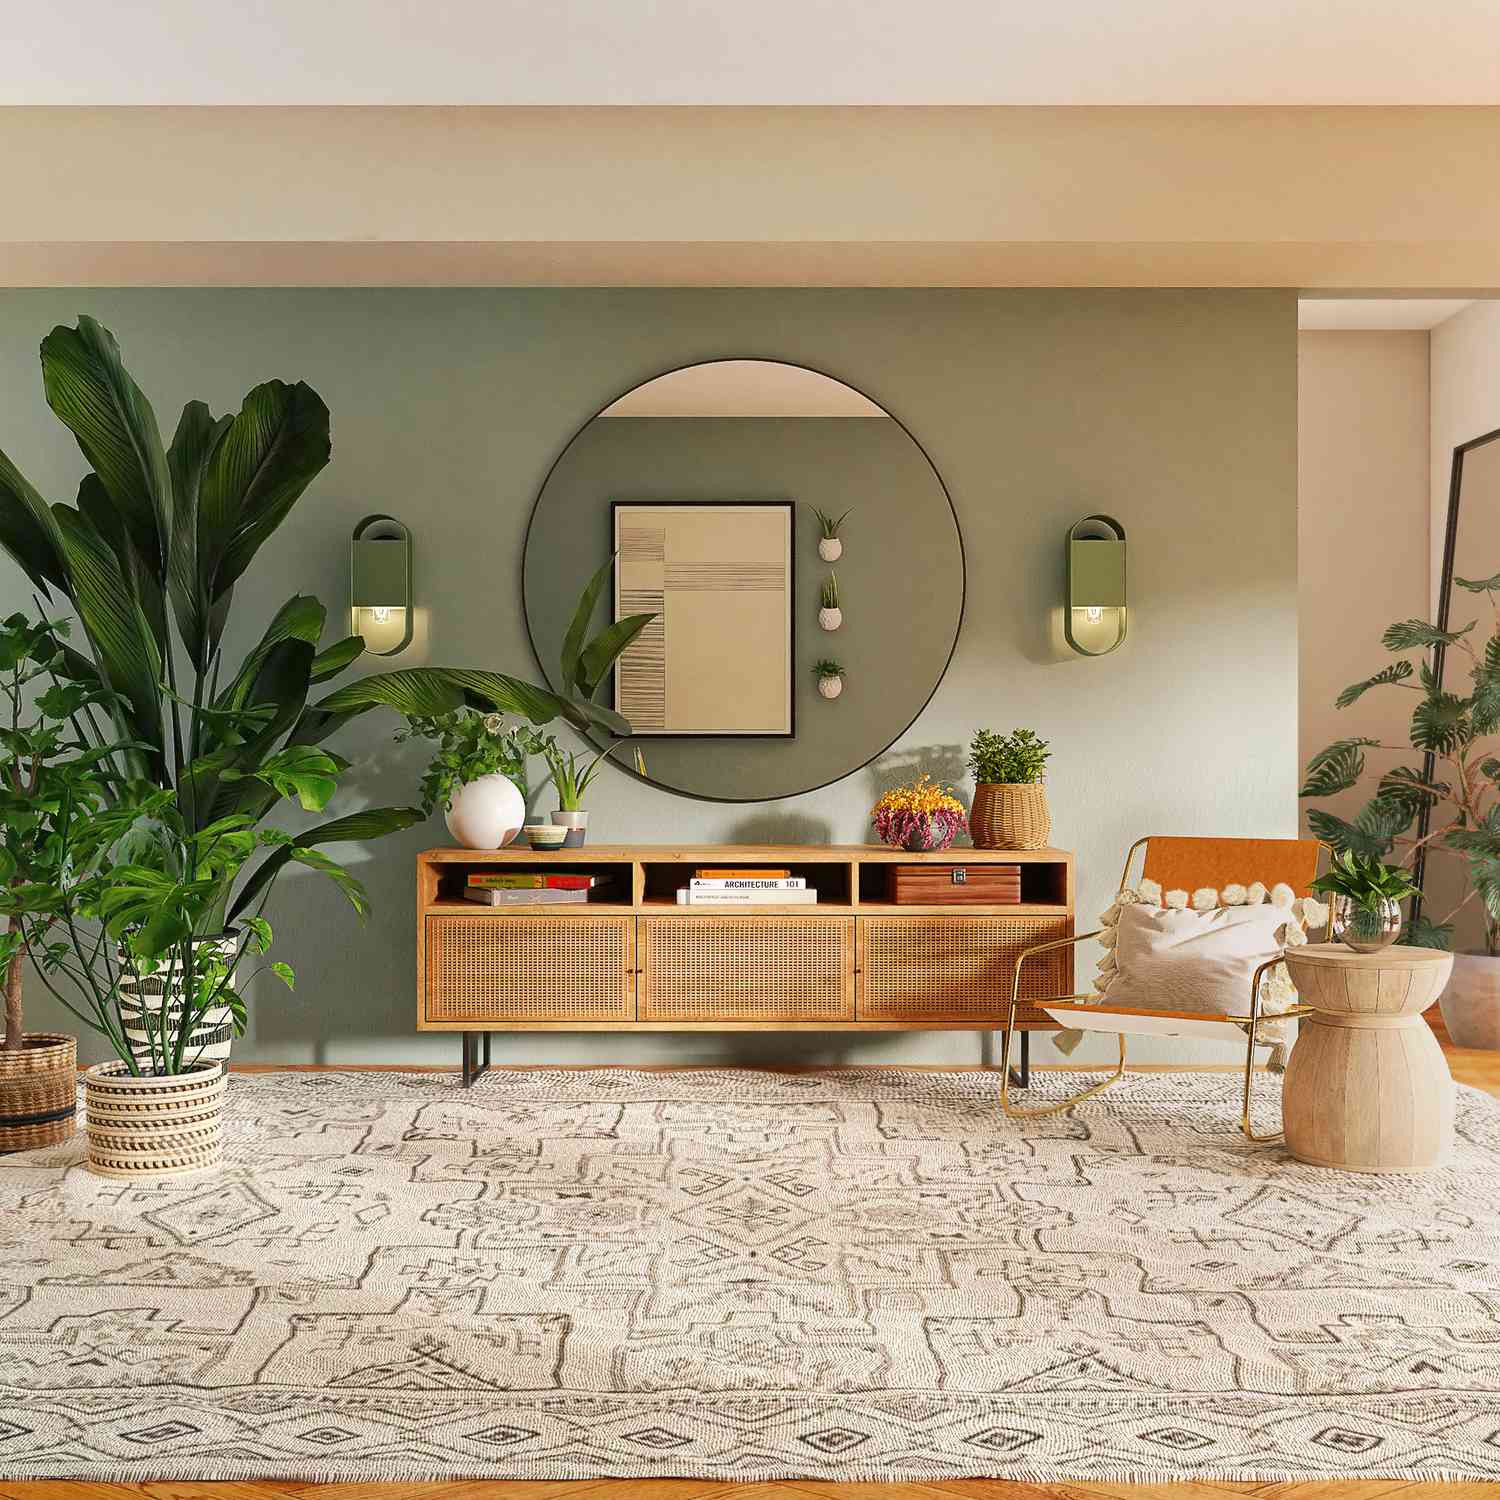 Heiminterieur mit mintgrüner Wandfarbe, rundem Spiegel und Pflanzen